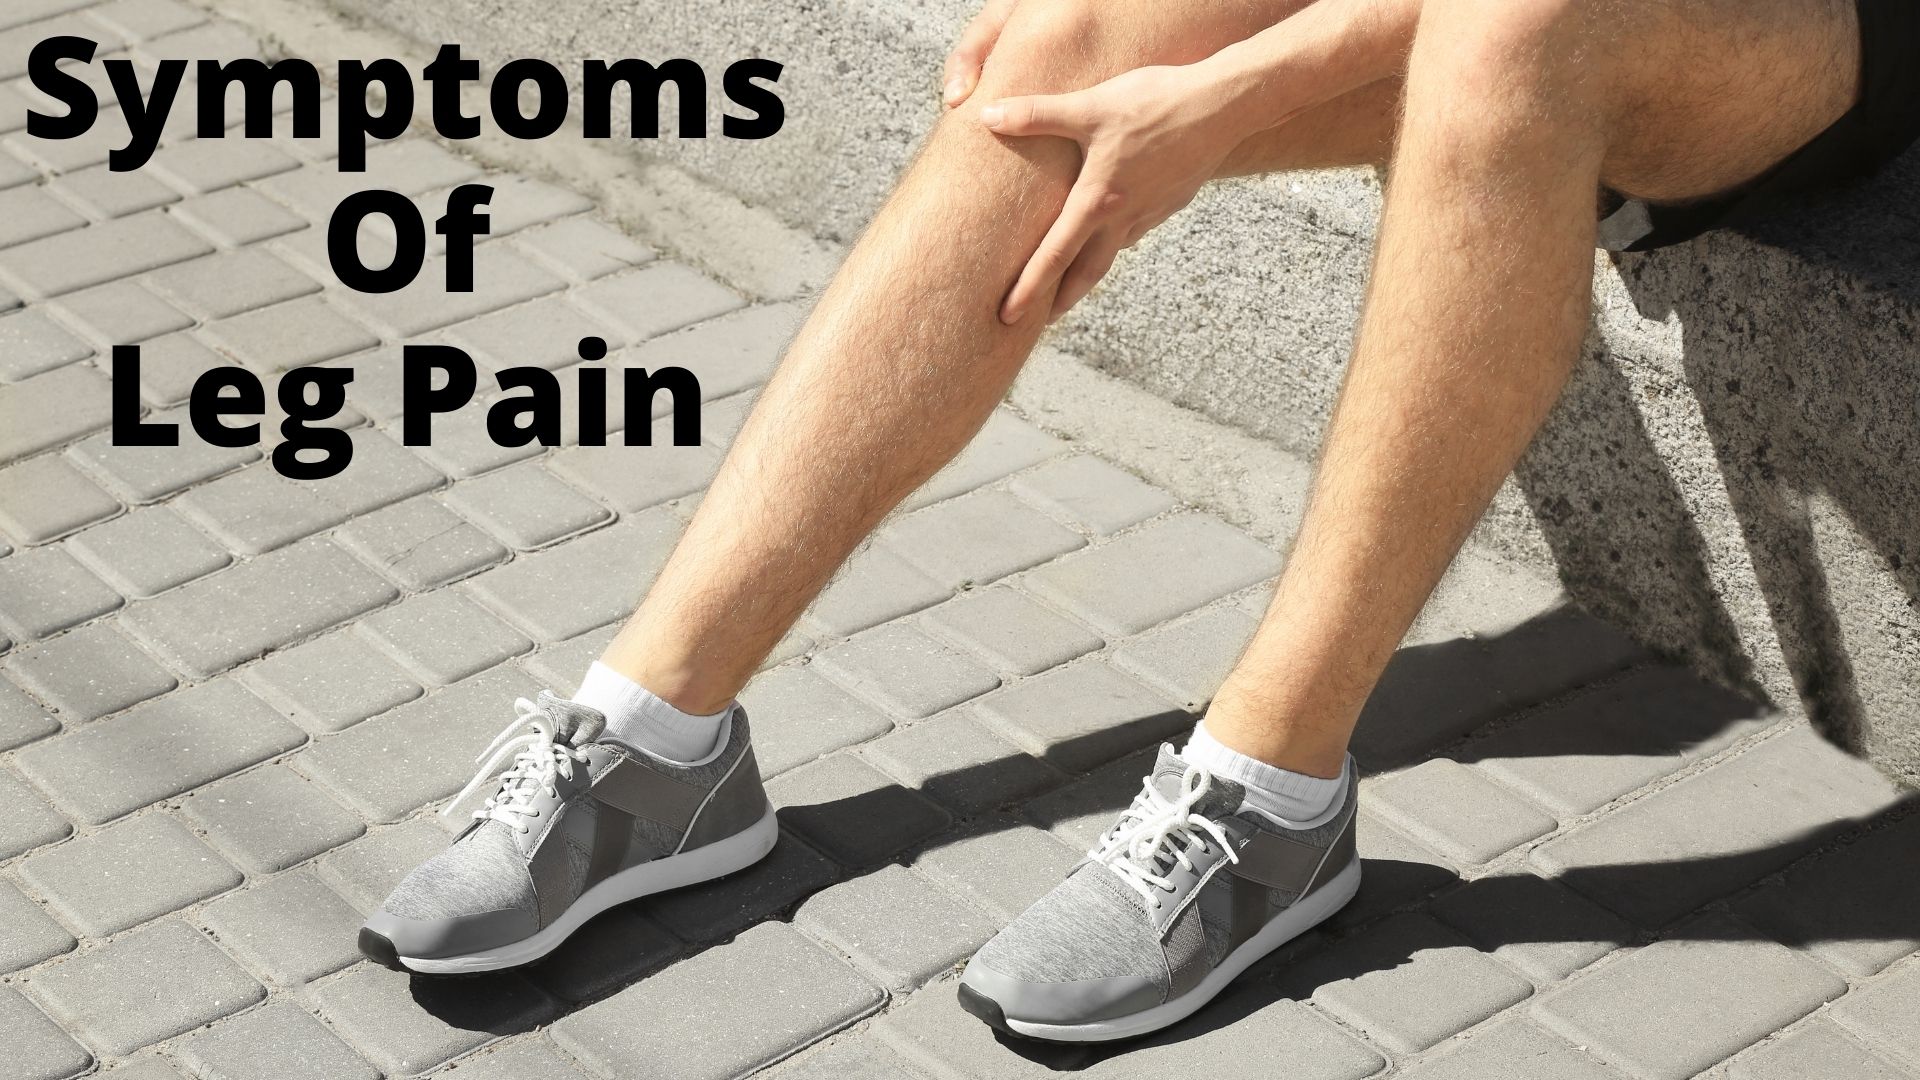 Symptoms of Leg Pain